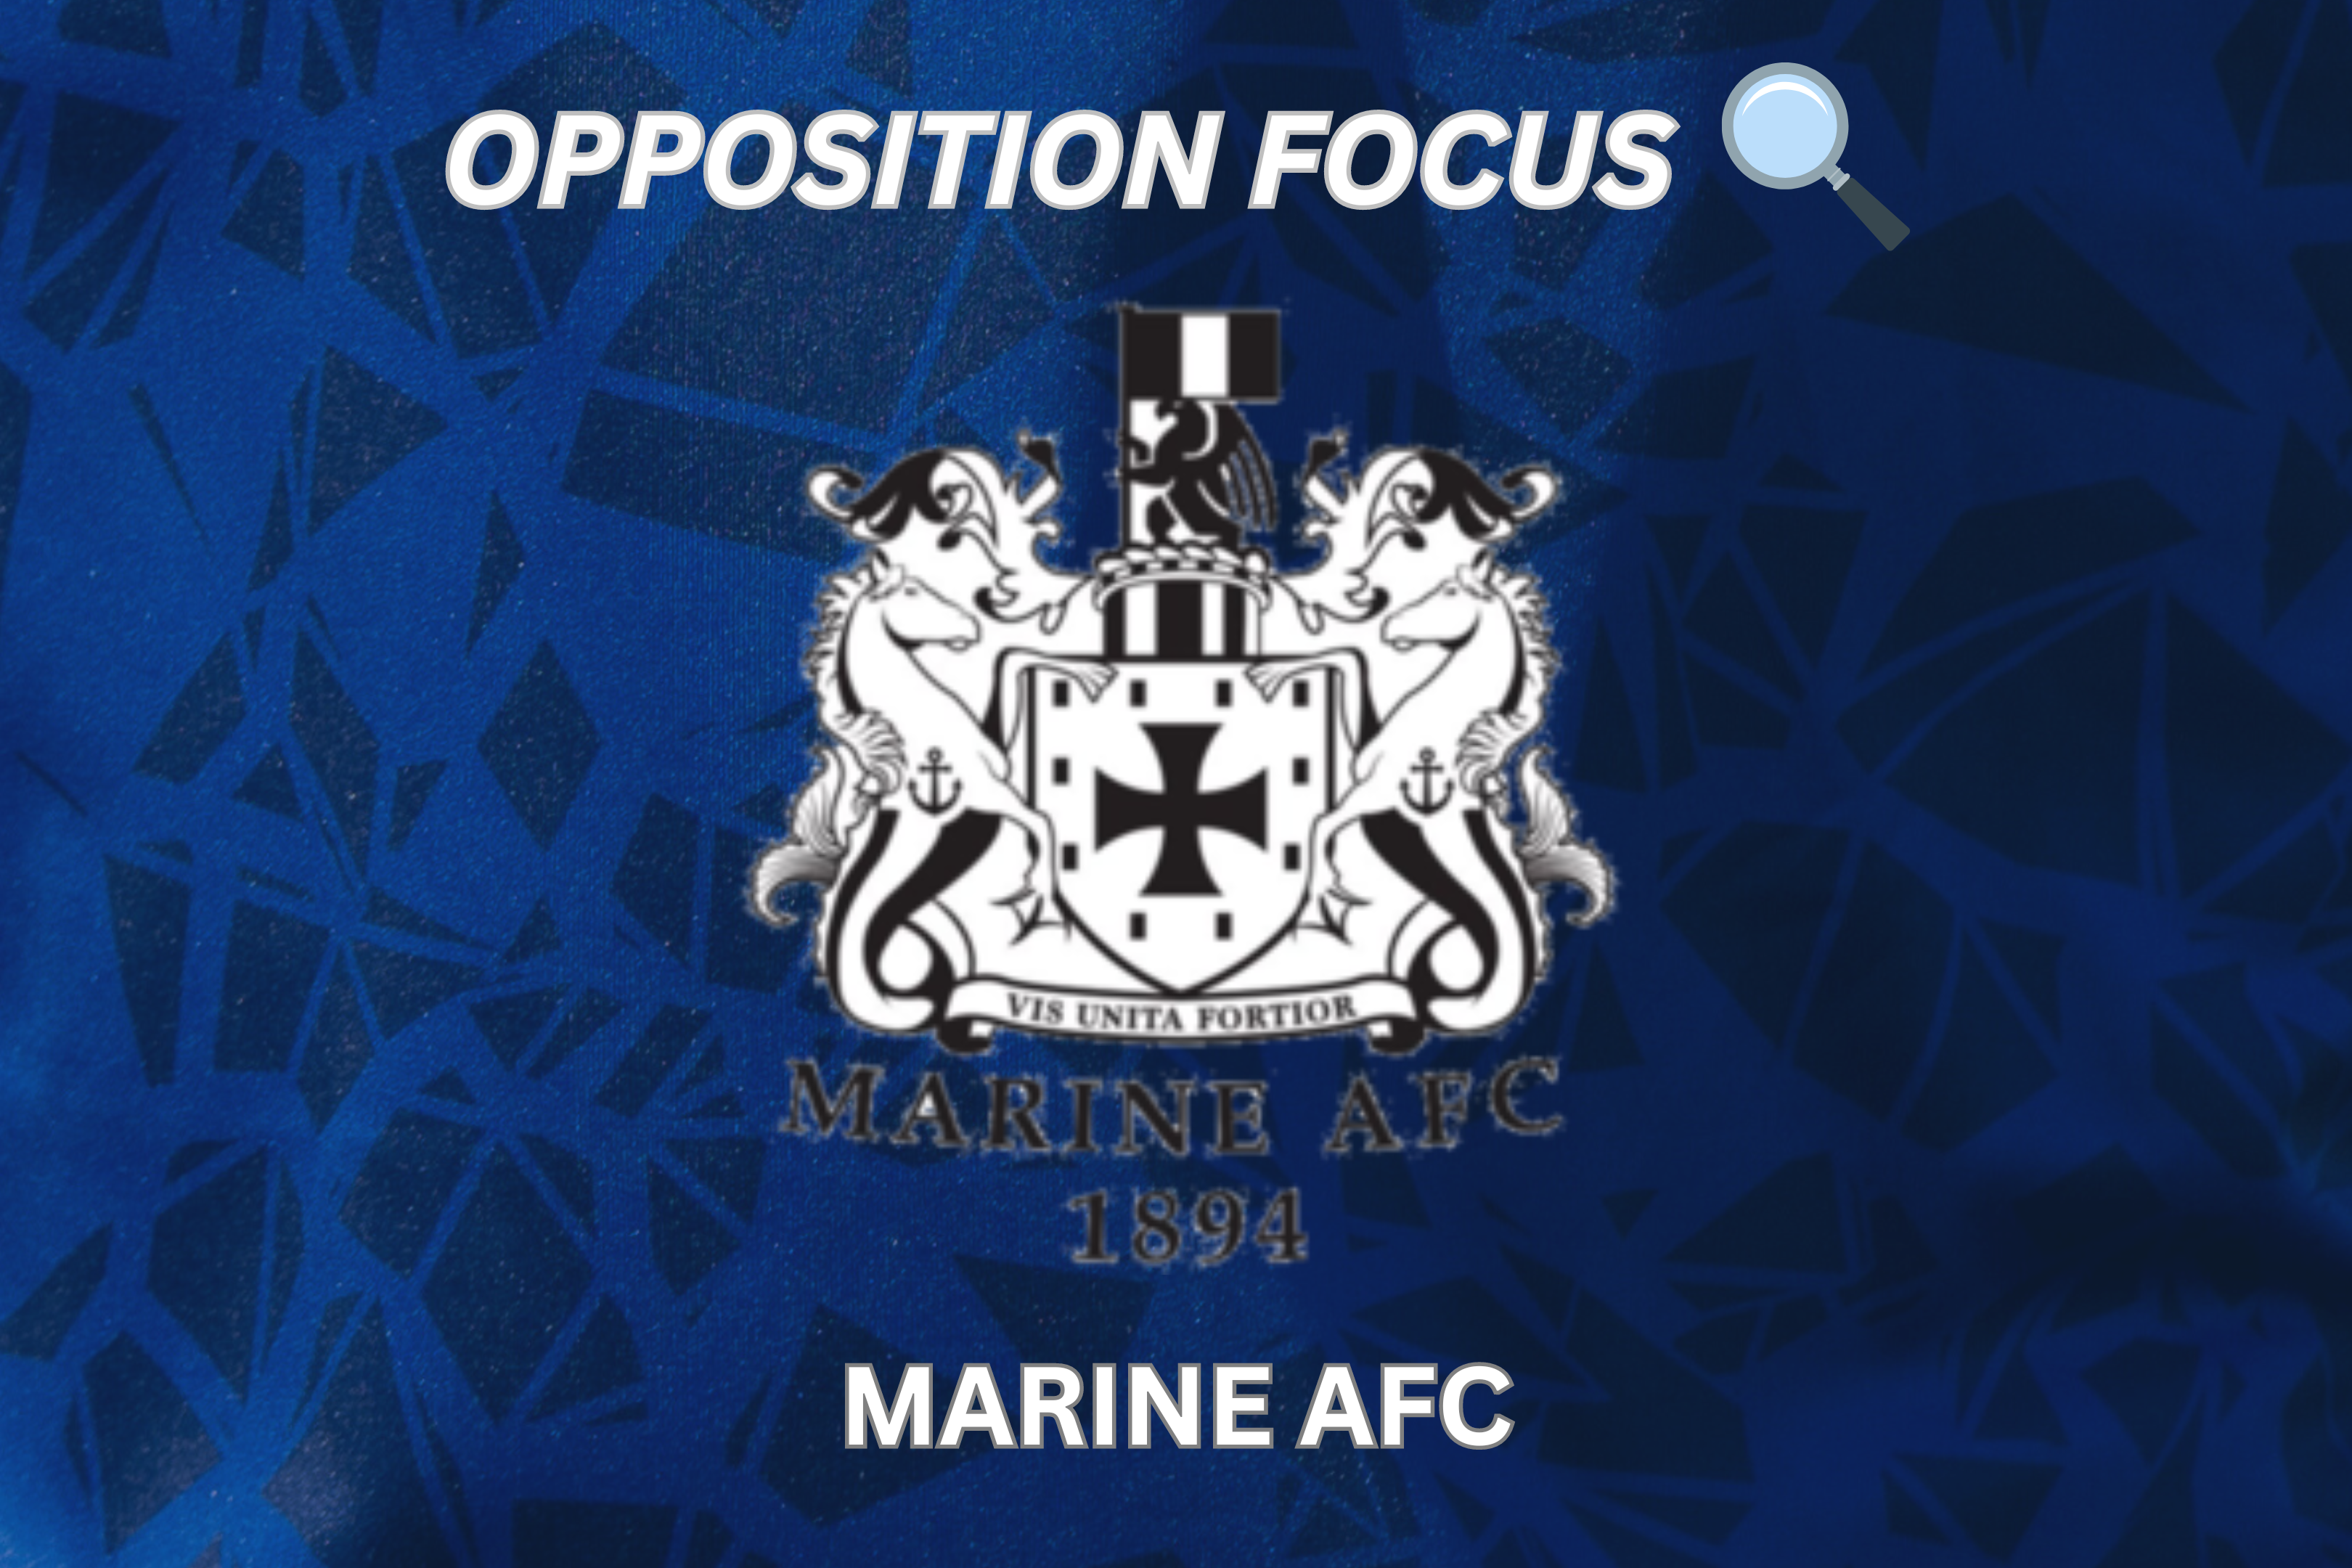 OPPOSITION FOCUS: MARINE AFC